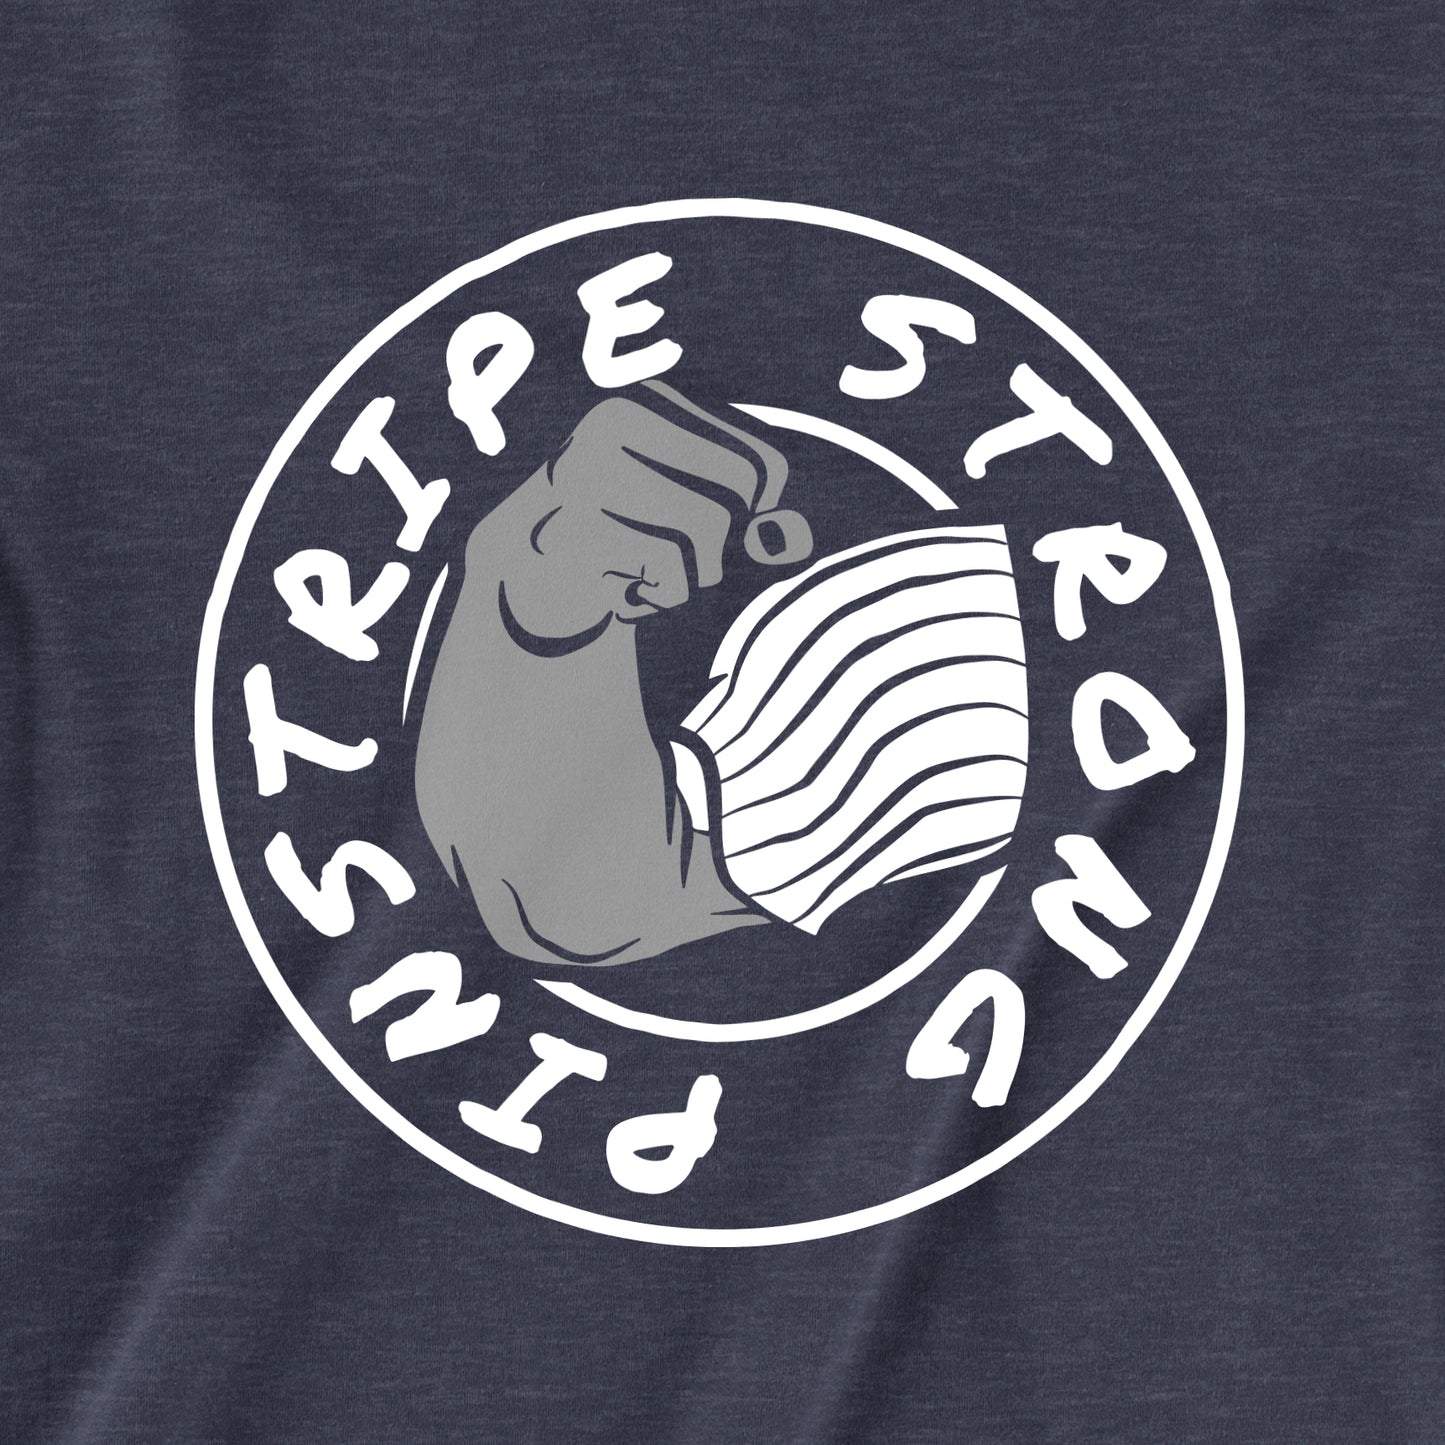 Pinstripe Strong Team Shirt | T-Shirt